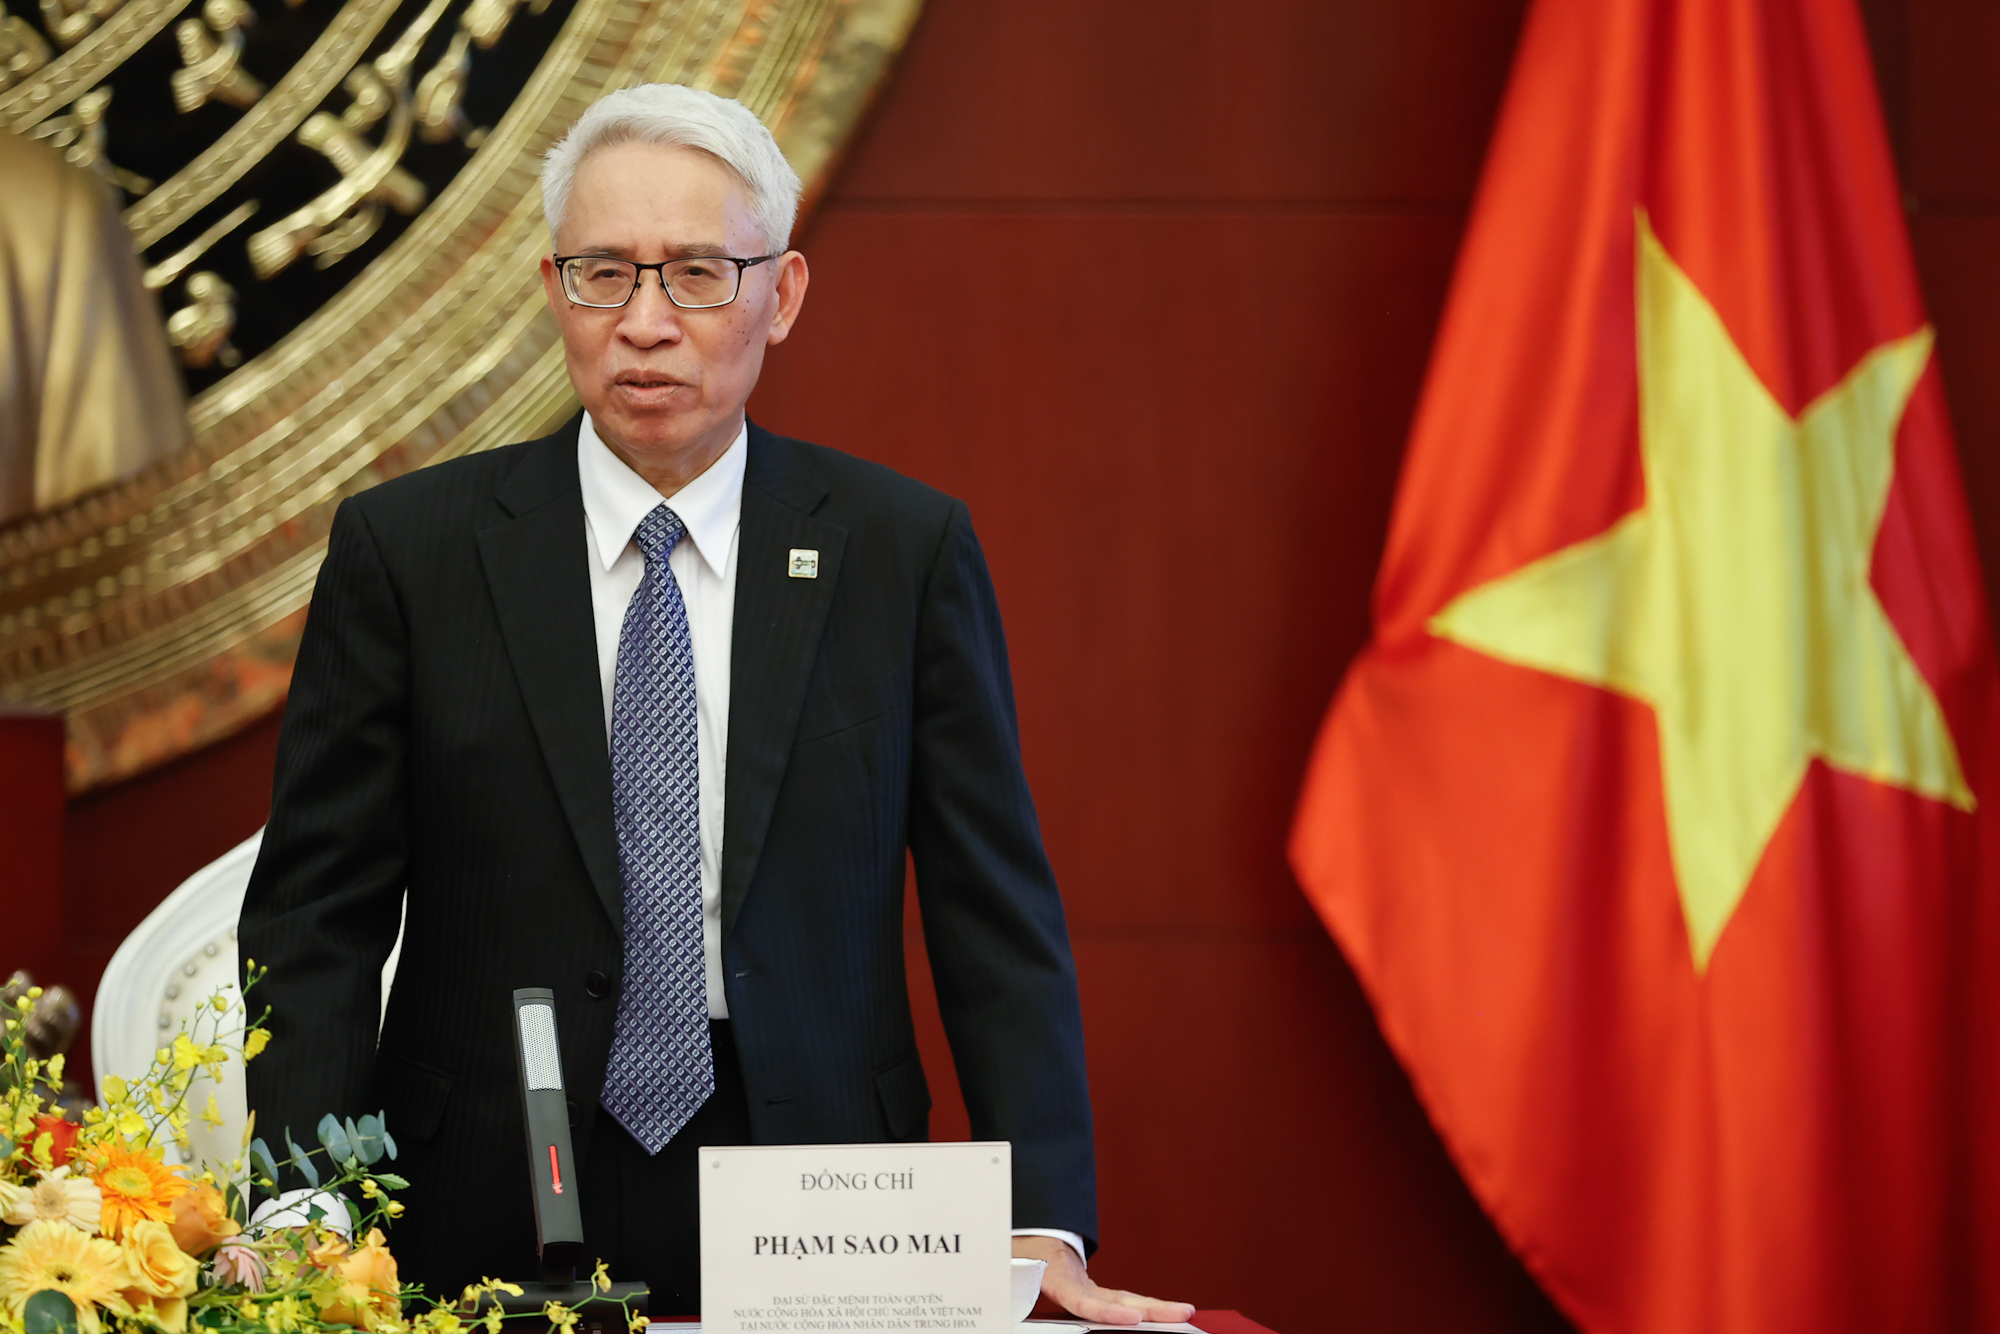 Đại sứ Việt Nam tại Trung Quốc Phạm Sao Mai báo cáo với Thủ tướng và Đoàn công tác về hoạt động của Đại sứ quán trong thời gian qua - Ảnh: VGP/Nhật Bắc